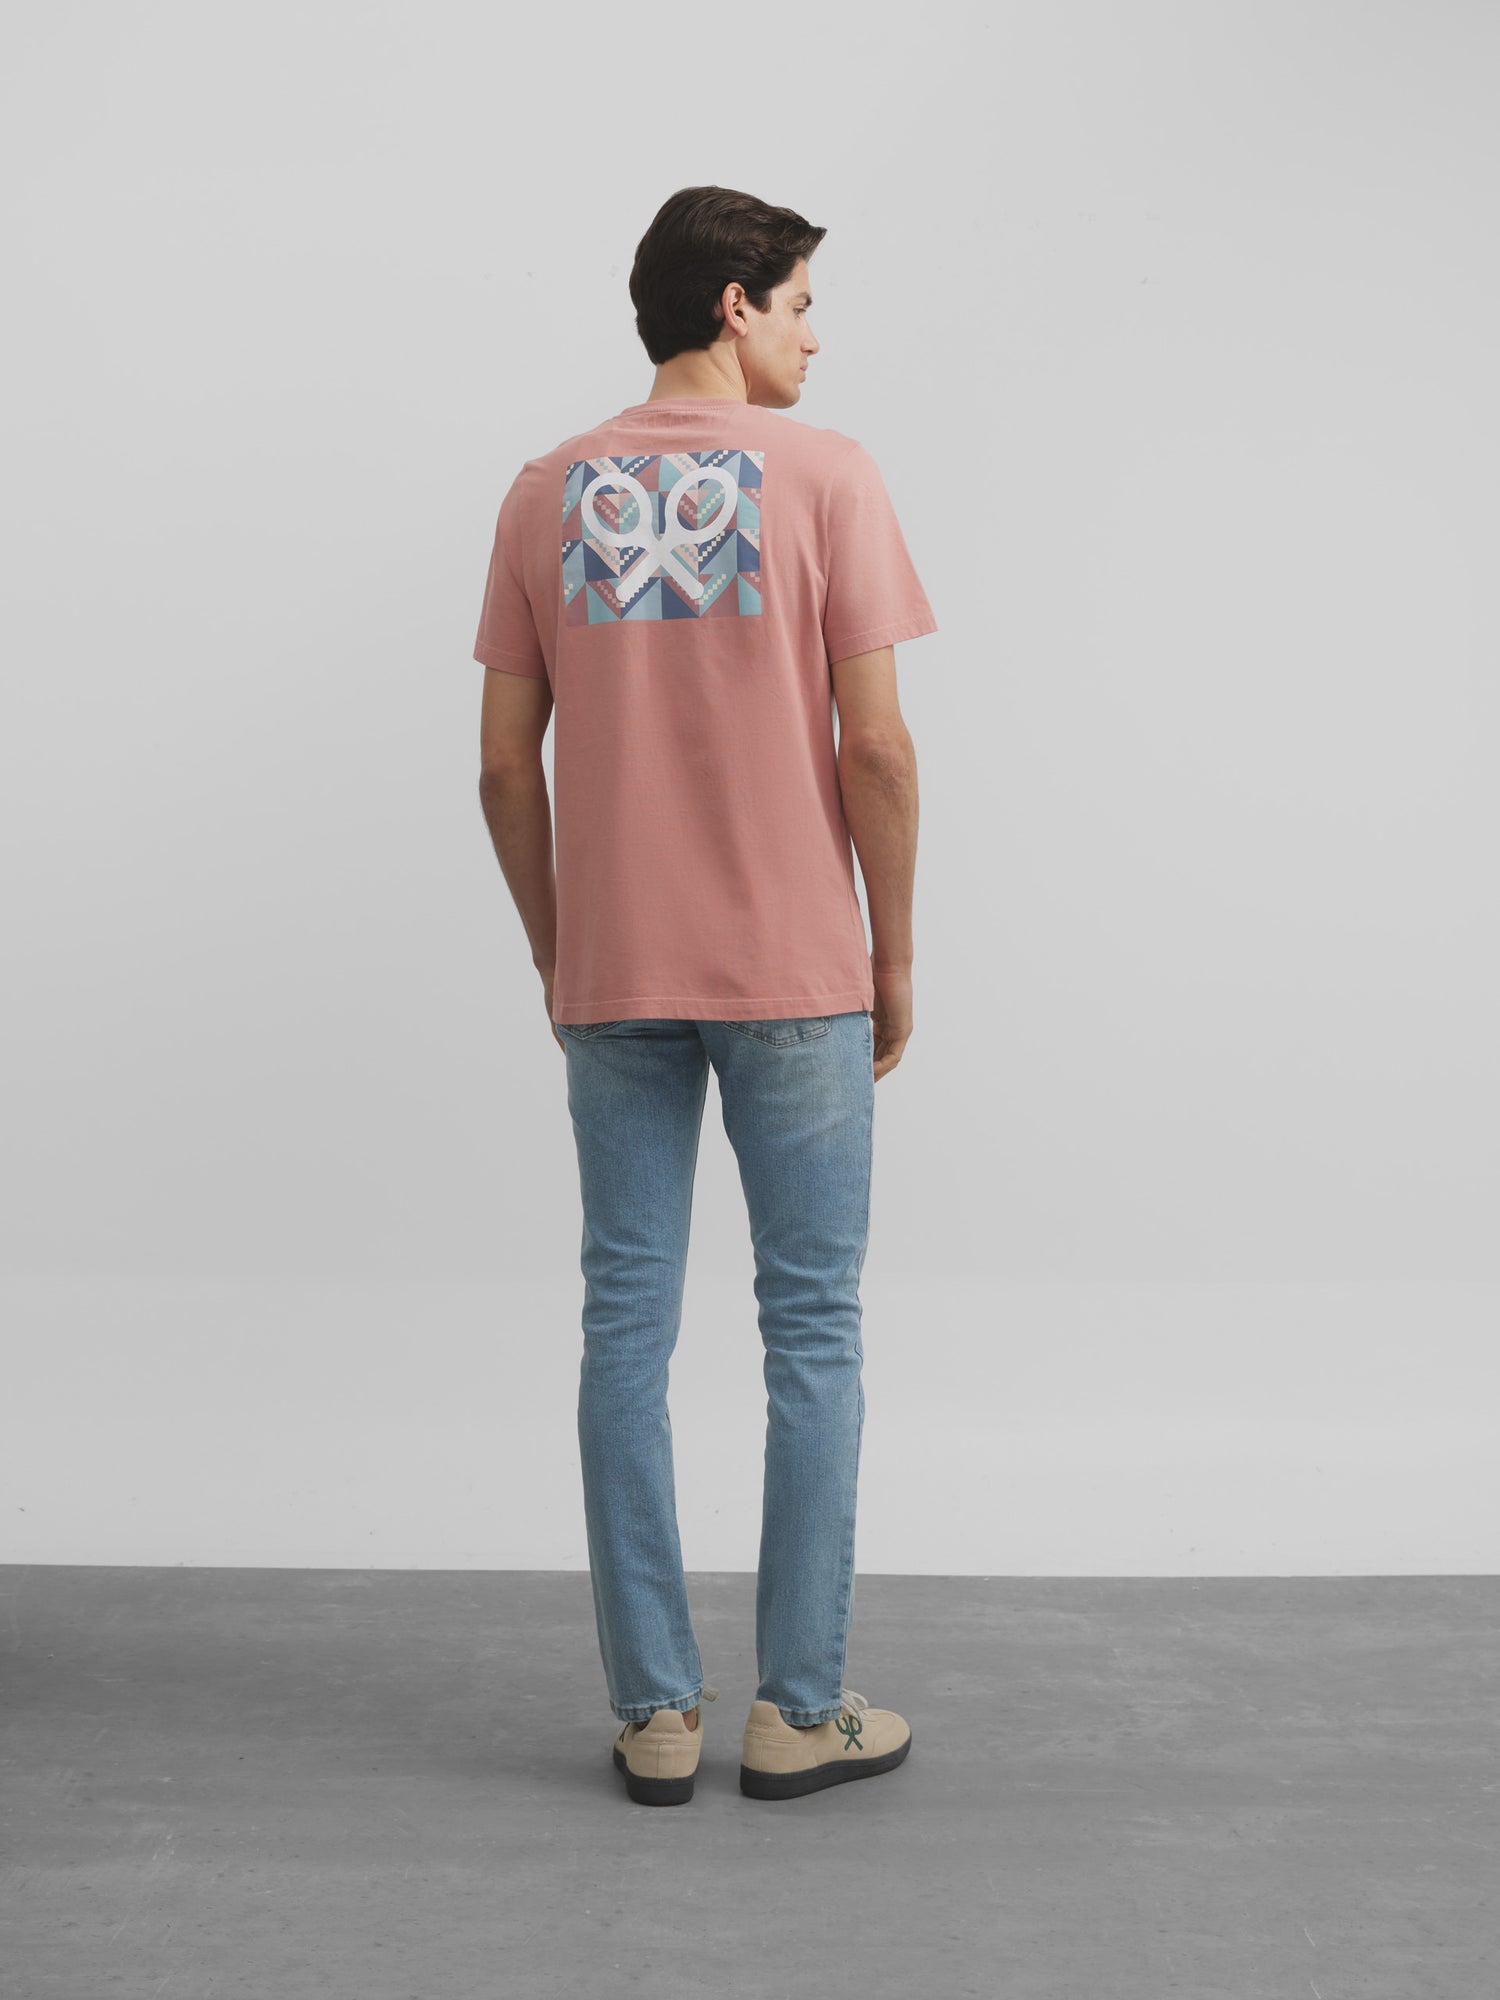 Camiseta raqueta geometrica coral